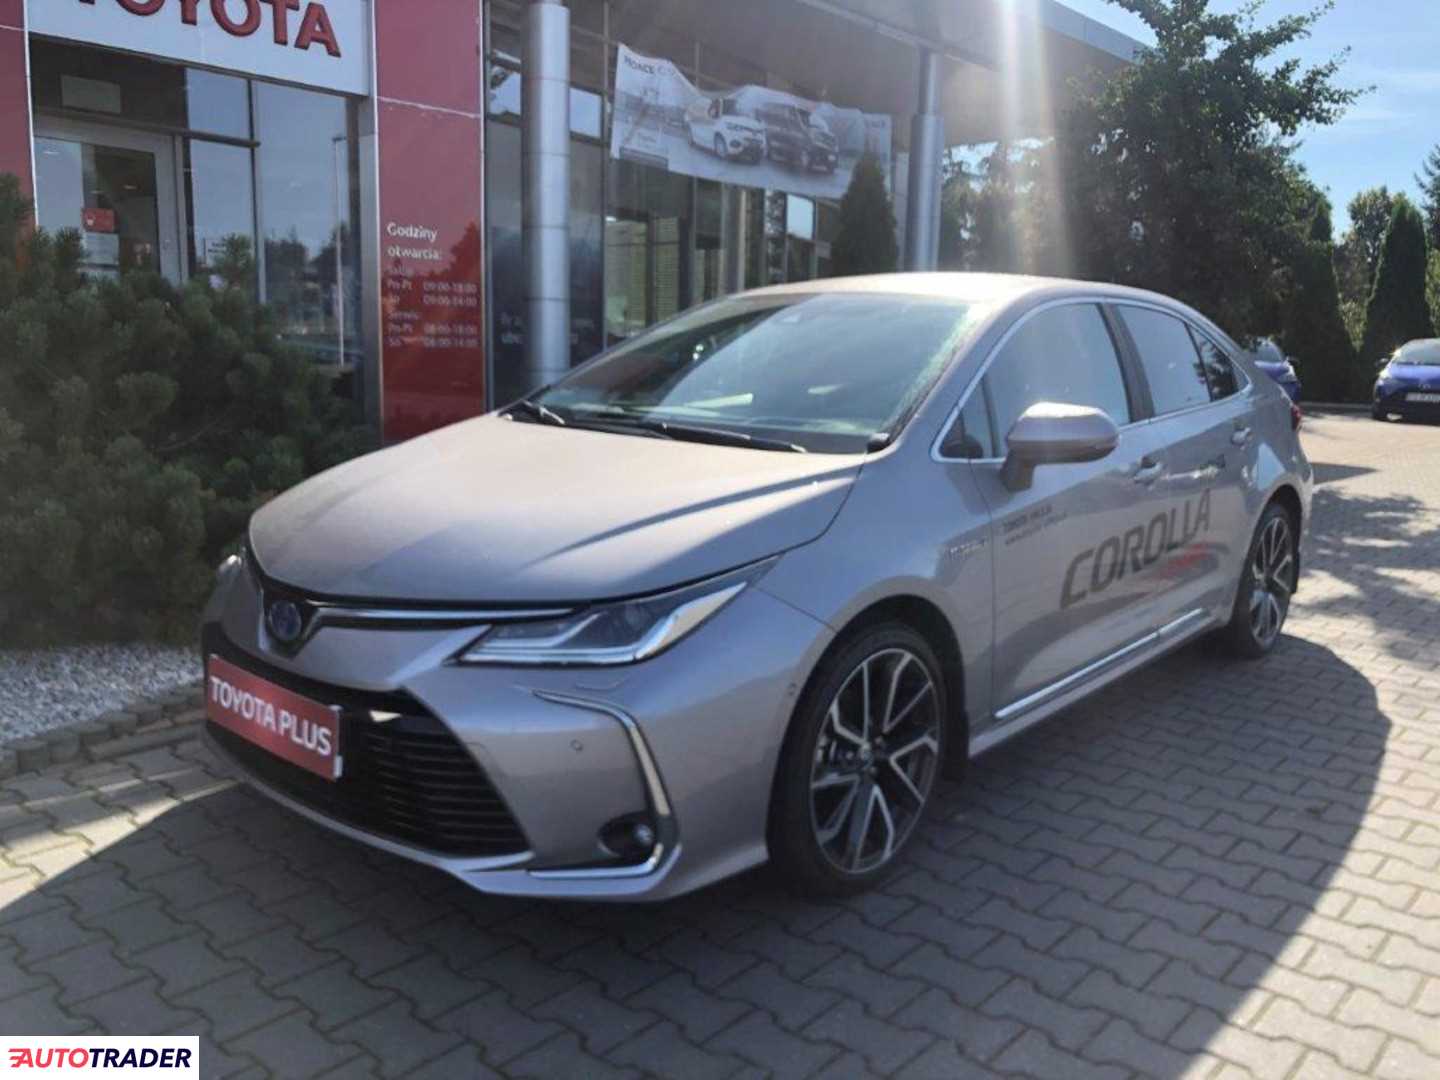 Toyota Corolla 1.8 hybrydowy 98 KM 2020r. (Poznań